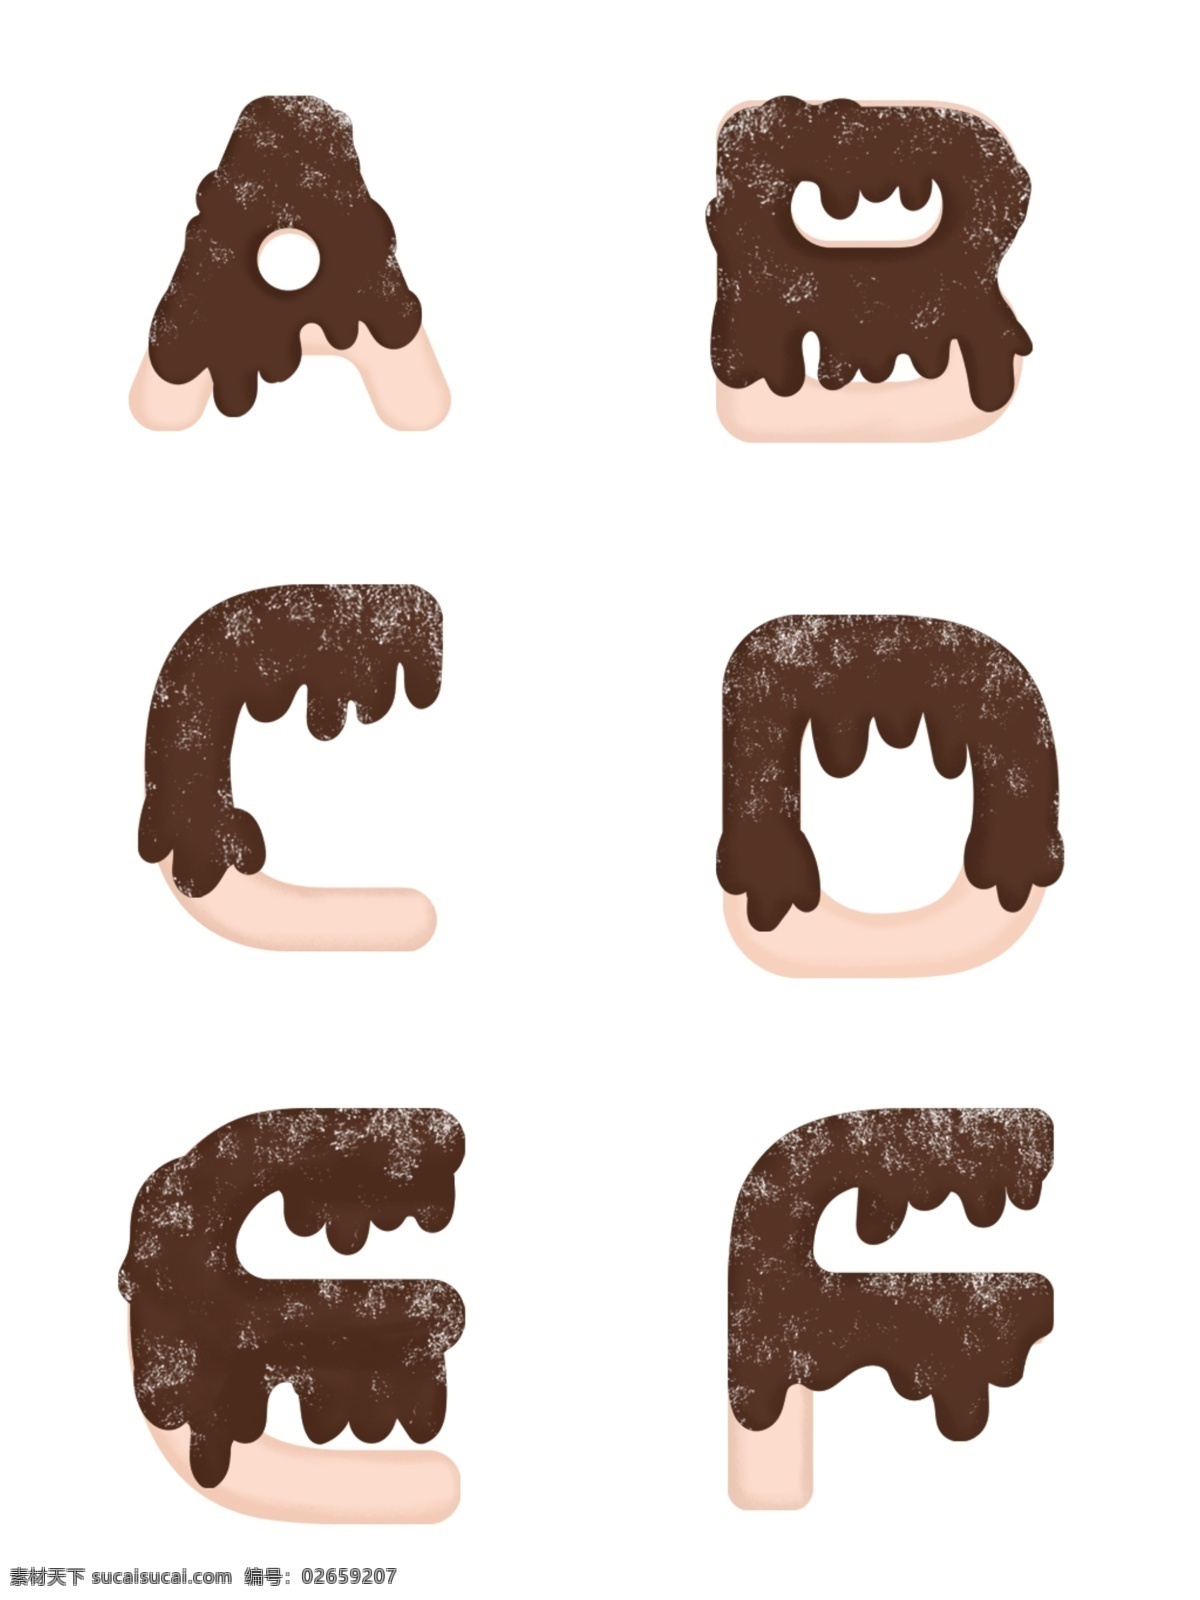 手绘 可爱 巧克力 糖果 英文 字母 元素 糖果字母 可爱字母 手绘字母 个性英文字母 创意字母 巧克力字母 饼干 饼干字母 糖衣字母